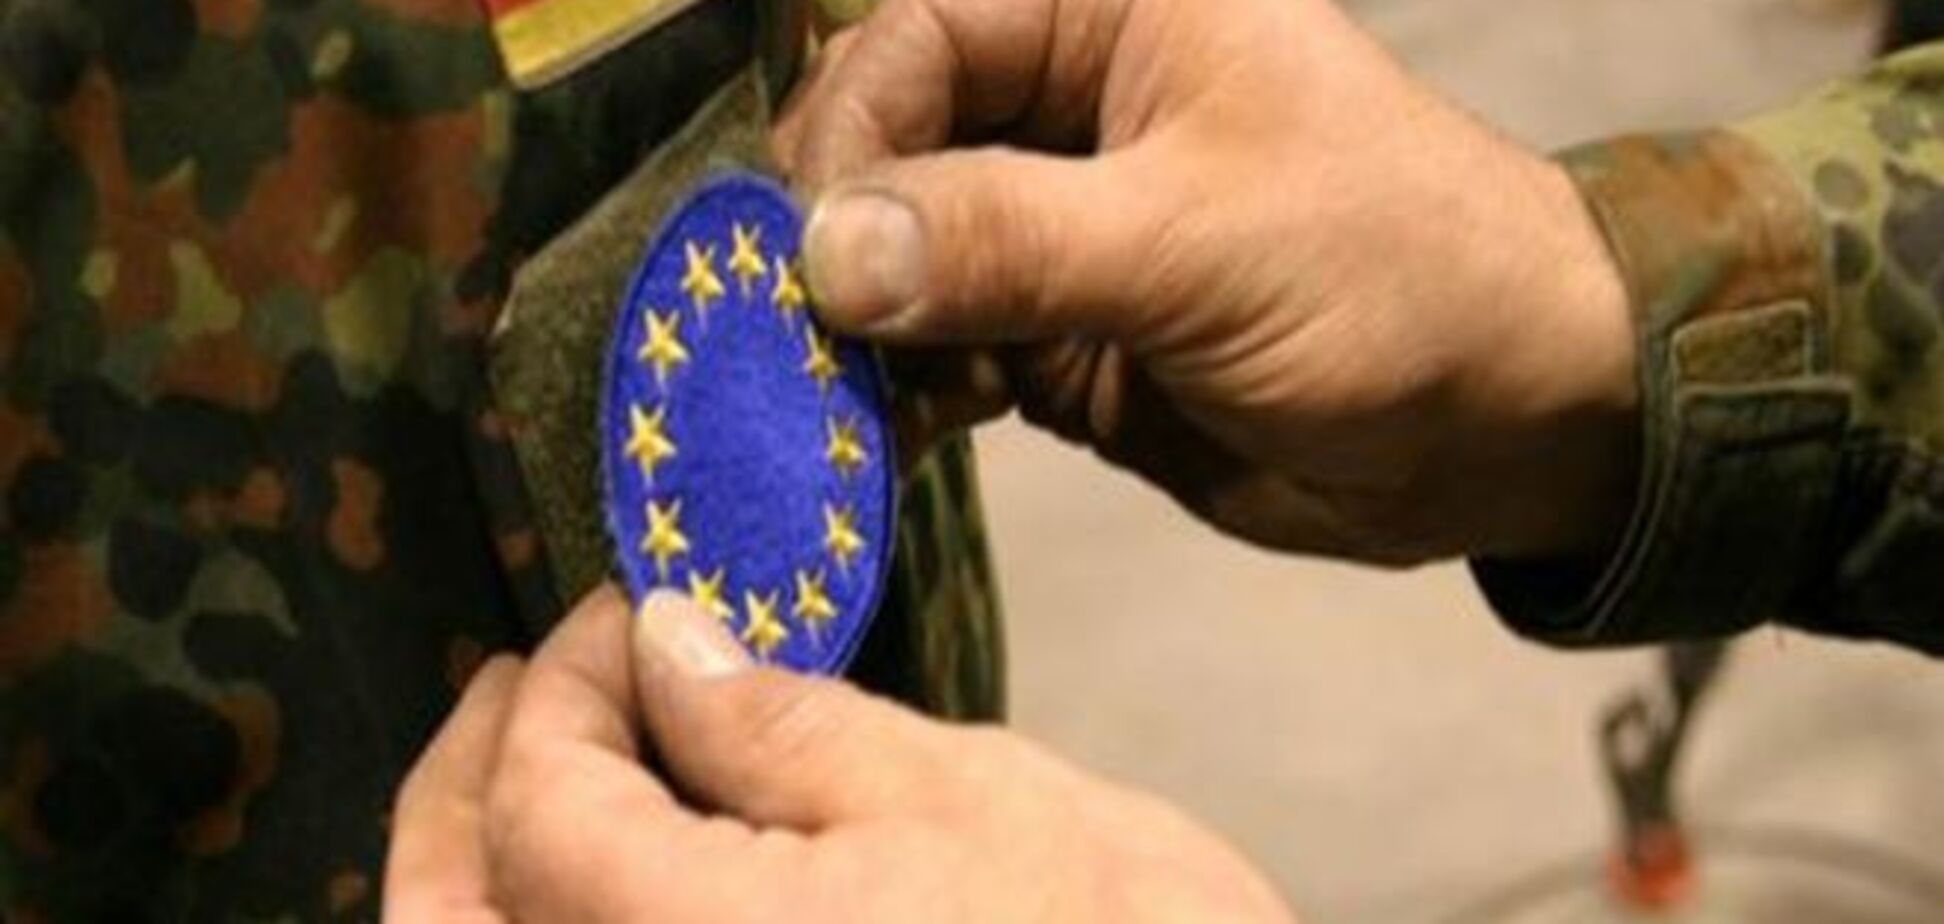 Общеевропейская армия: вопросы и ответы